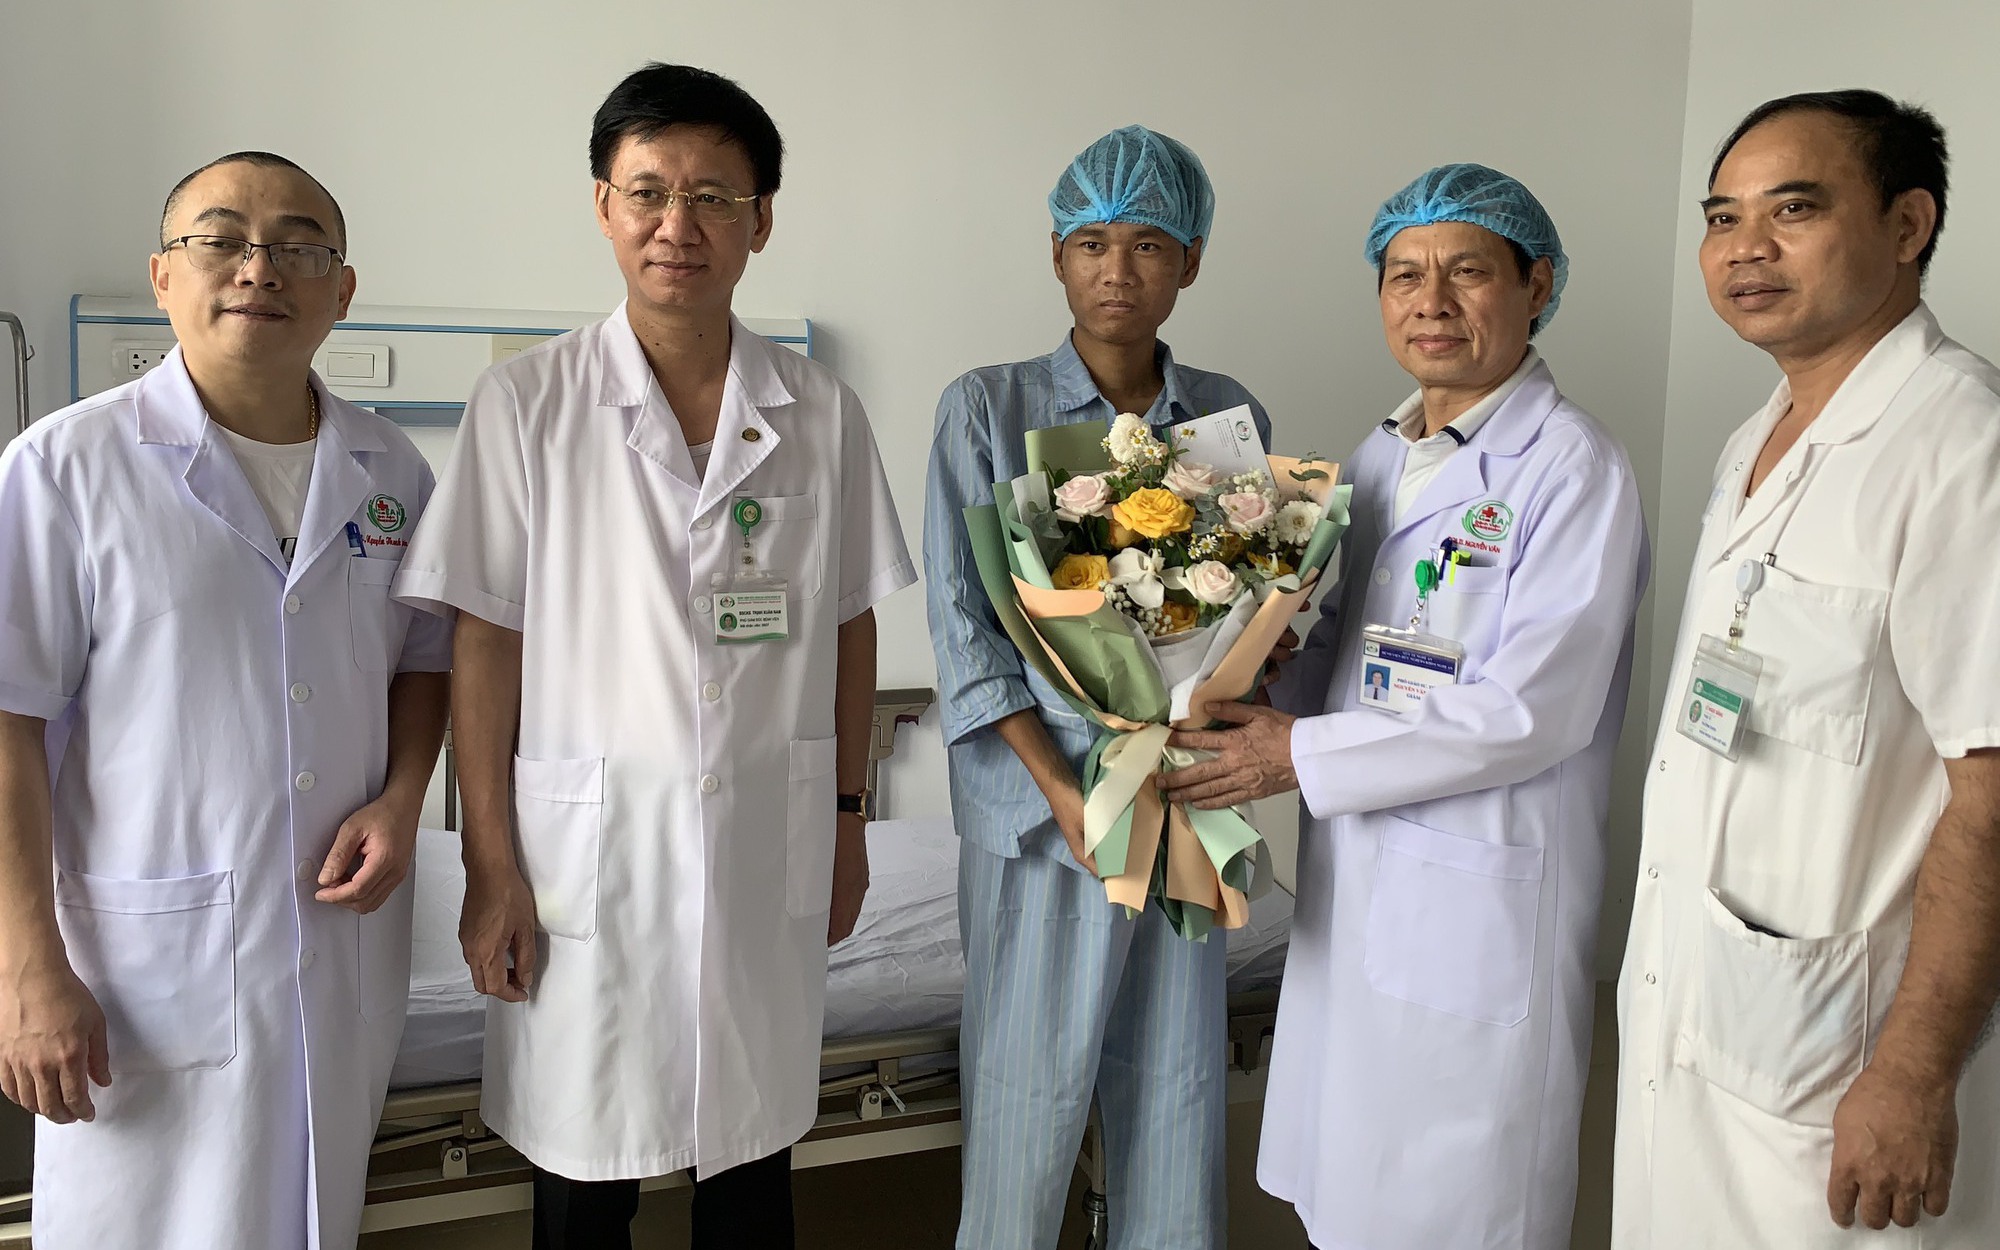 2 bệnh nhân được ghép thận từ người cho chết não ở Nghệ An xuất viện